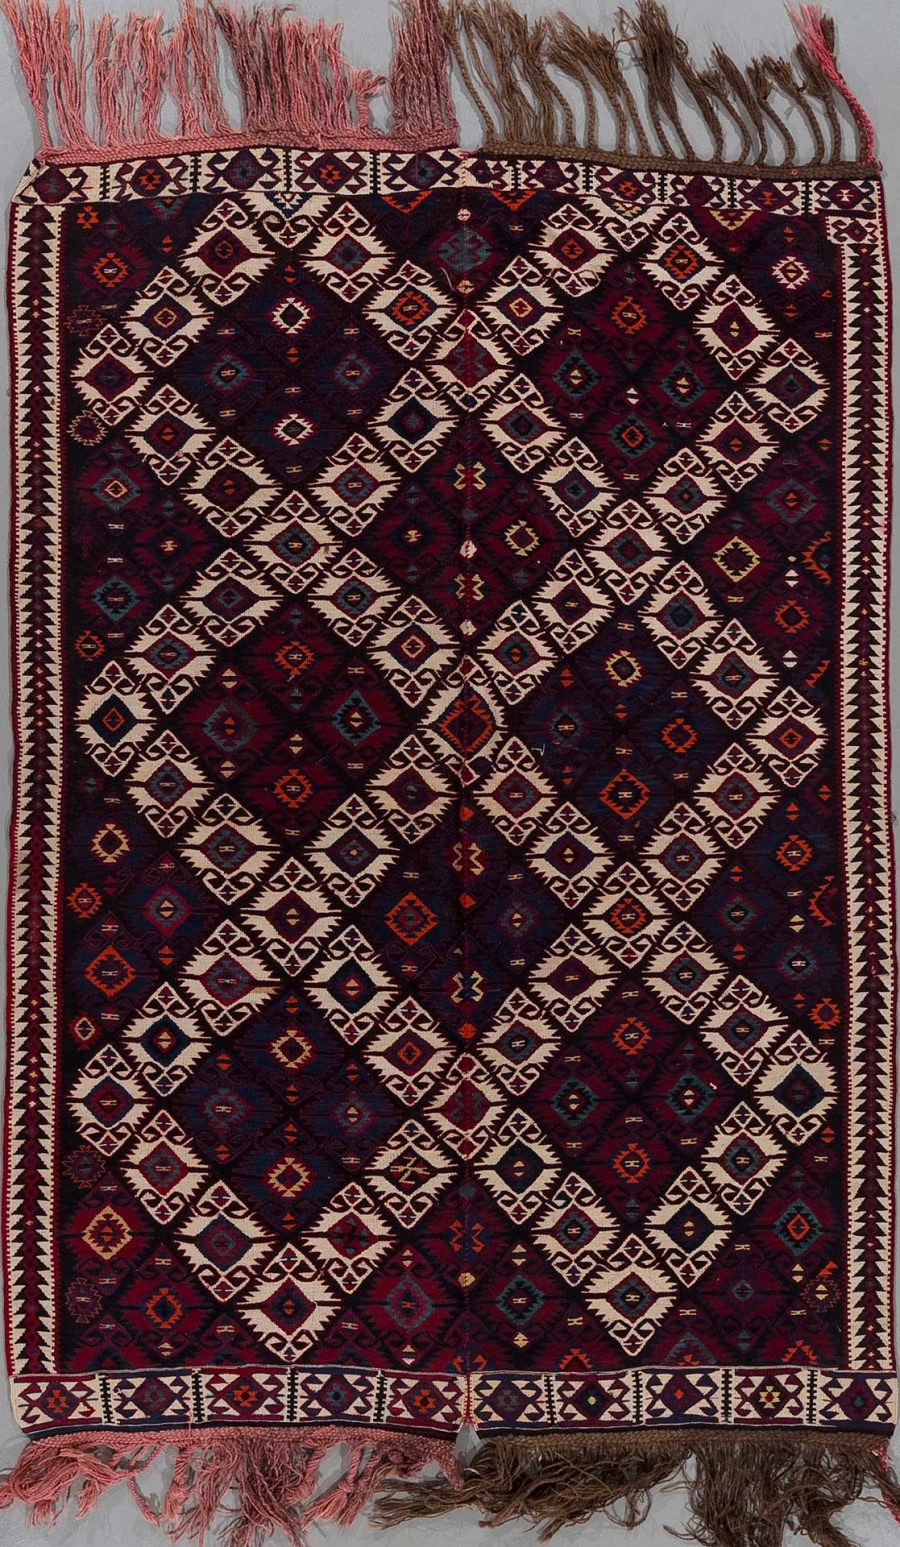 Traditioneller handgewebter Teppich mit komplexem geometrischem Muster in Dunkelrot, Schwarz, Beige und Blautönen, umrandet von einem dekorativen Bordürenmuster und versehen mit Fransen an beiden Enden.